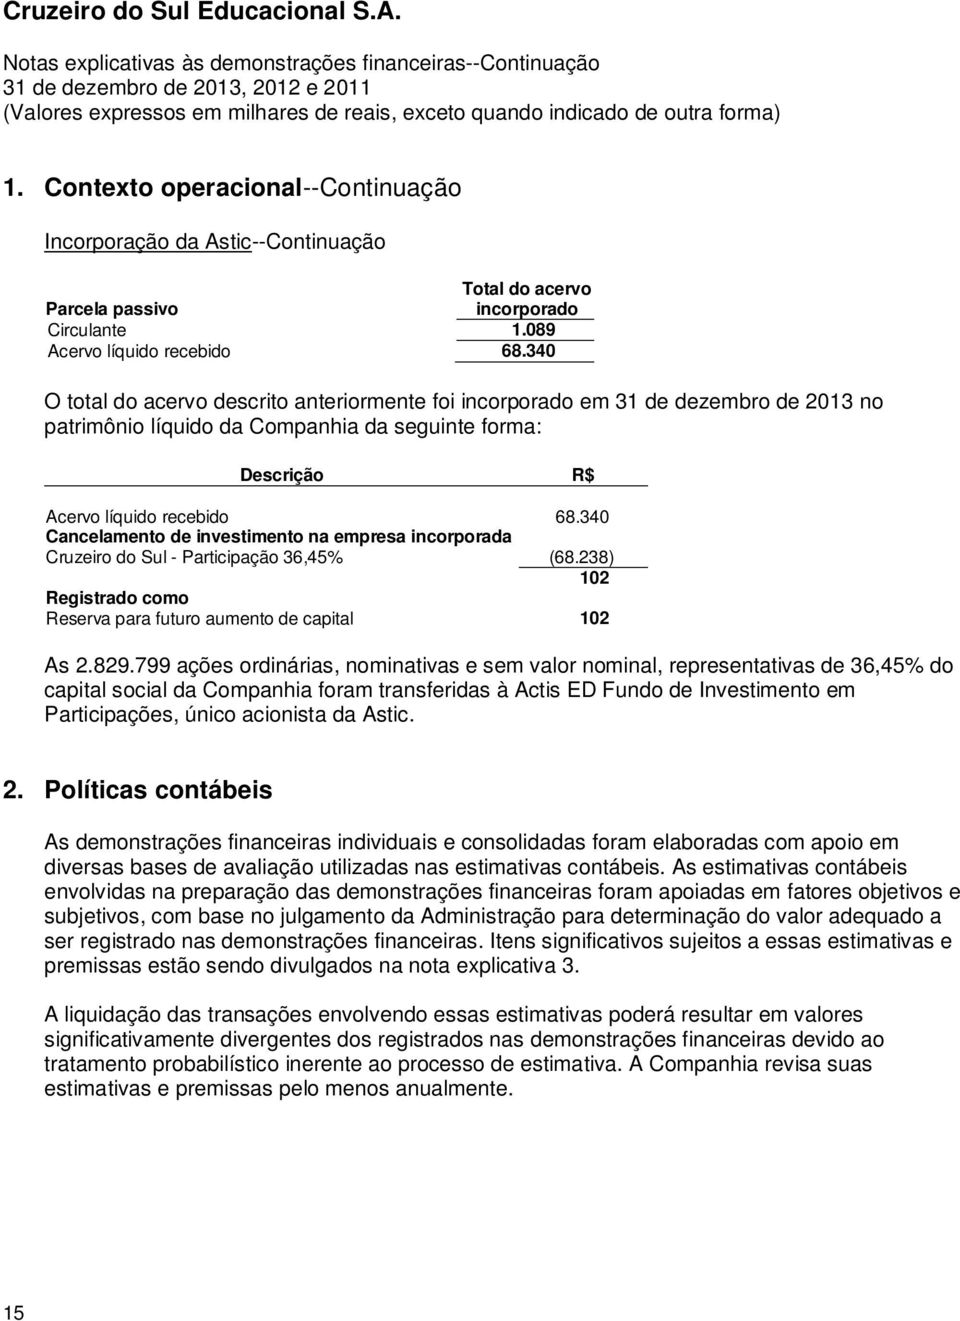 340 Cancelamento de investimento na empresa incorporada Cruzeiro do Sul - Participação 36,45% (68.238) 102 Registrado como Reserva para futuro aumento de capital 102 As 2.829.